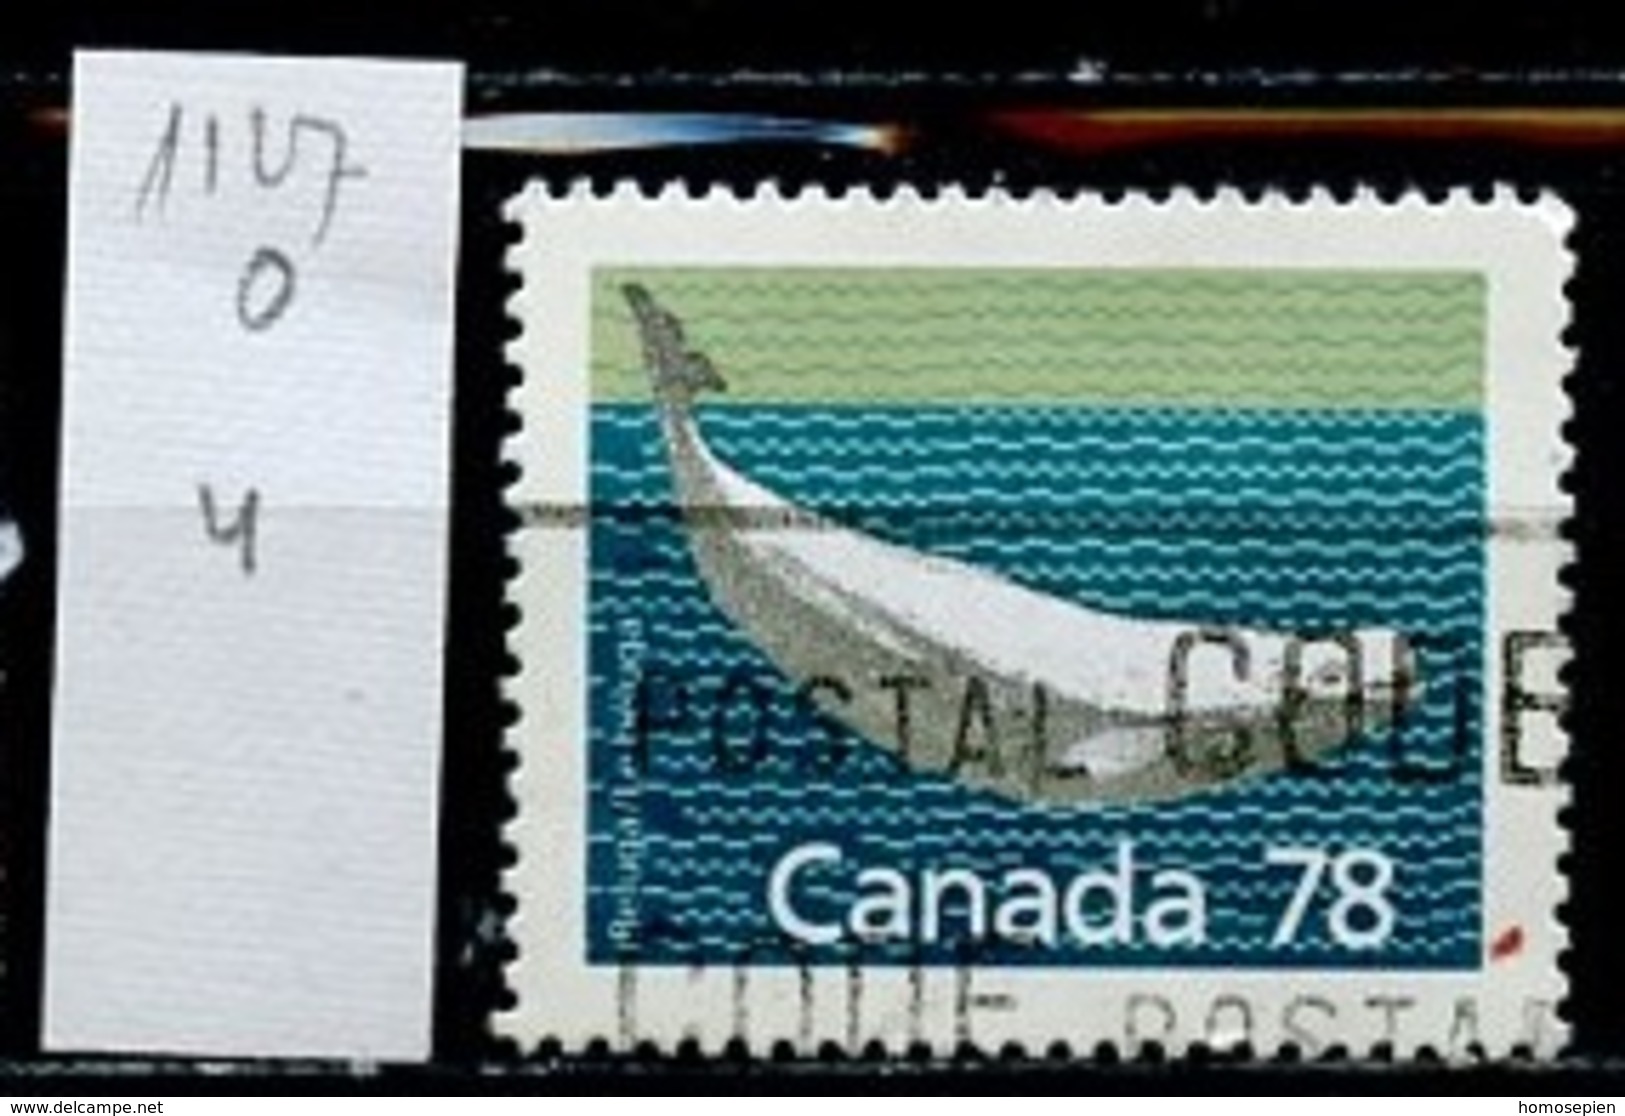 Canada - Kanada 1990 Y&T N°1127 - Michel N°1165 (o) - 78c Béluga - Oblitérés